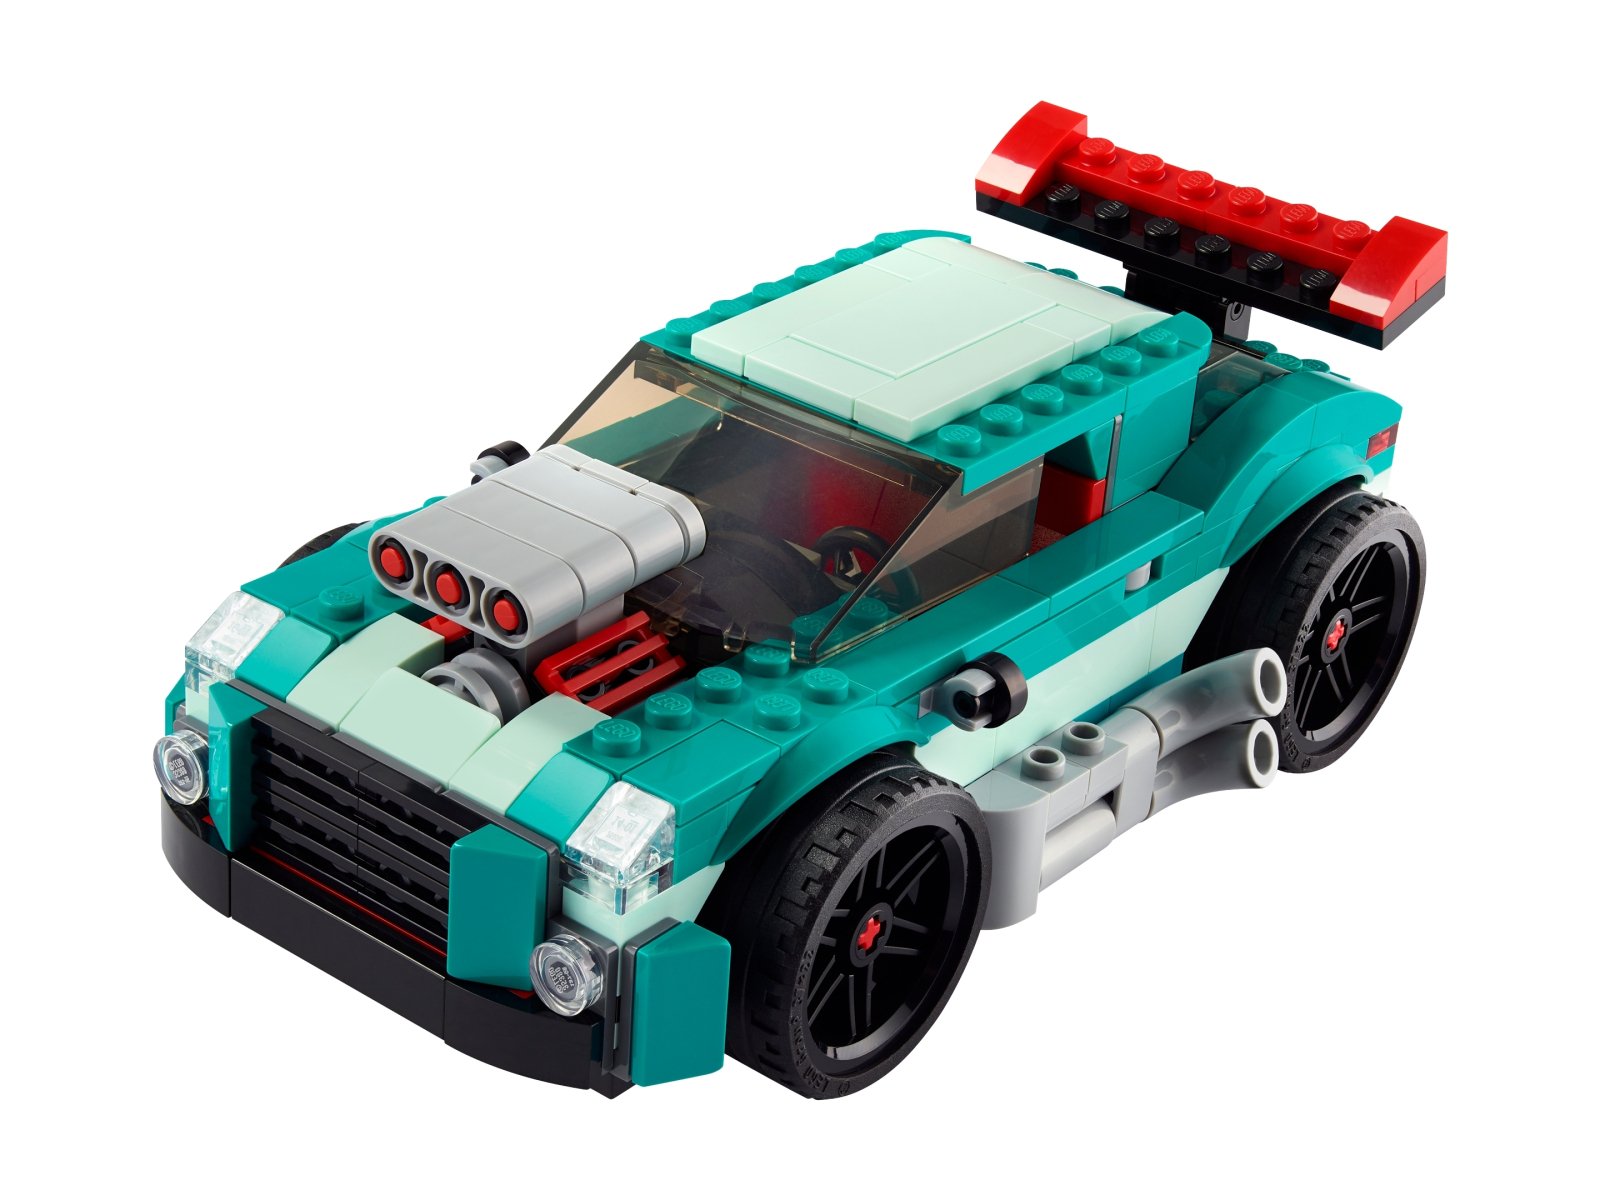 LEGO 31127 Creator 3 w 1 Uliczna wyścigówka